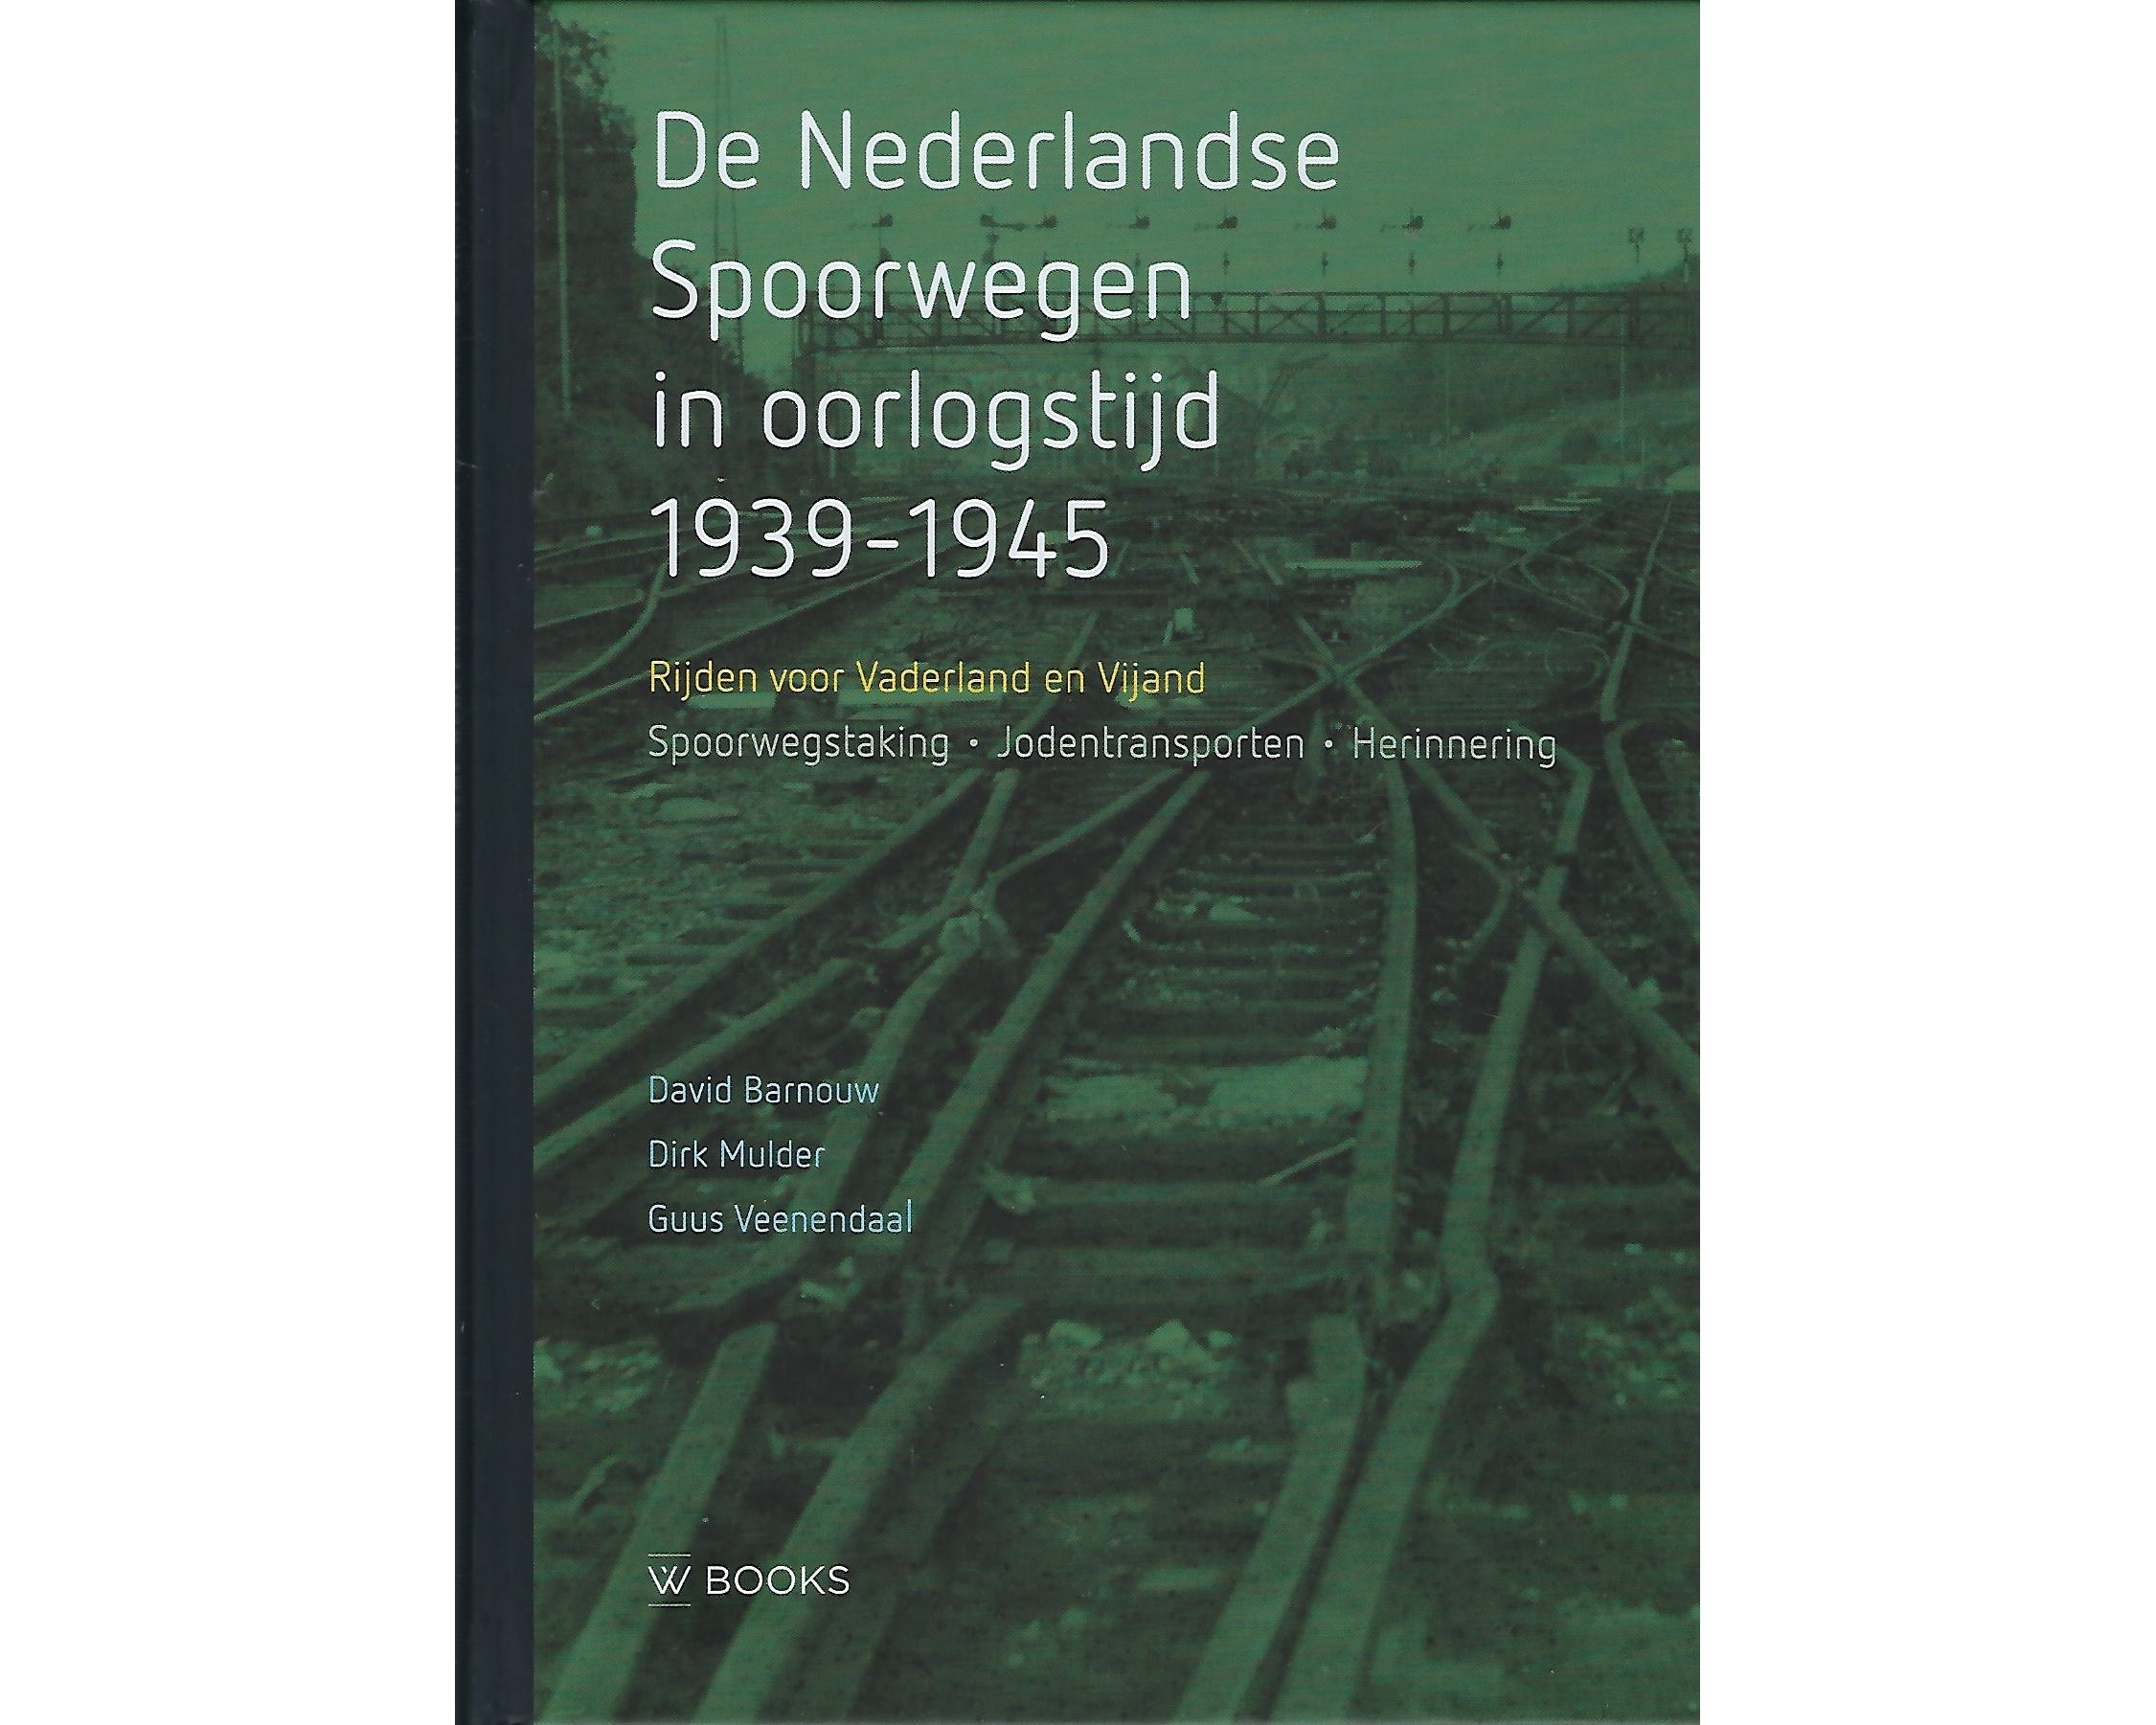 DE NEDERLANDSE SPOORWEGEN IN OORLOGSTIJD 1939-1945